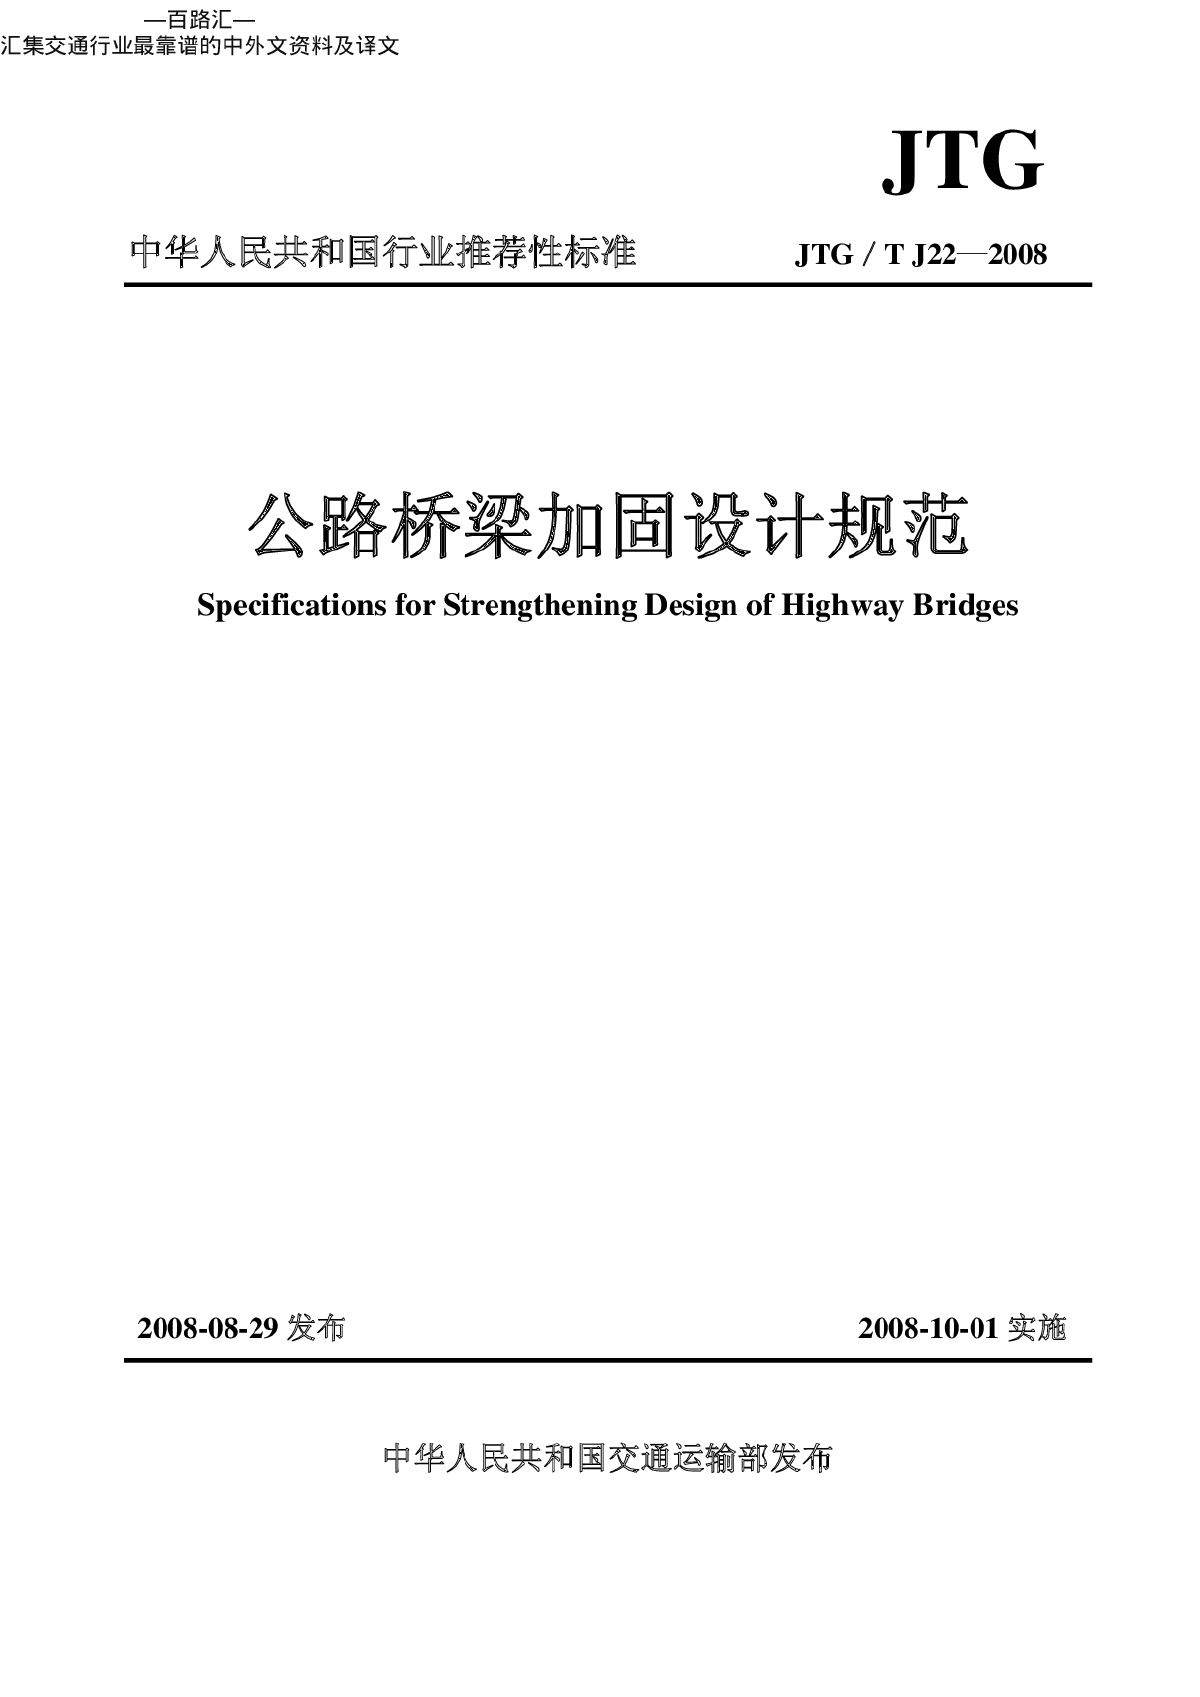 《公路桥梁加固设计规范》JTGT J22-2008